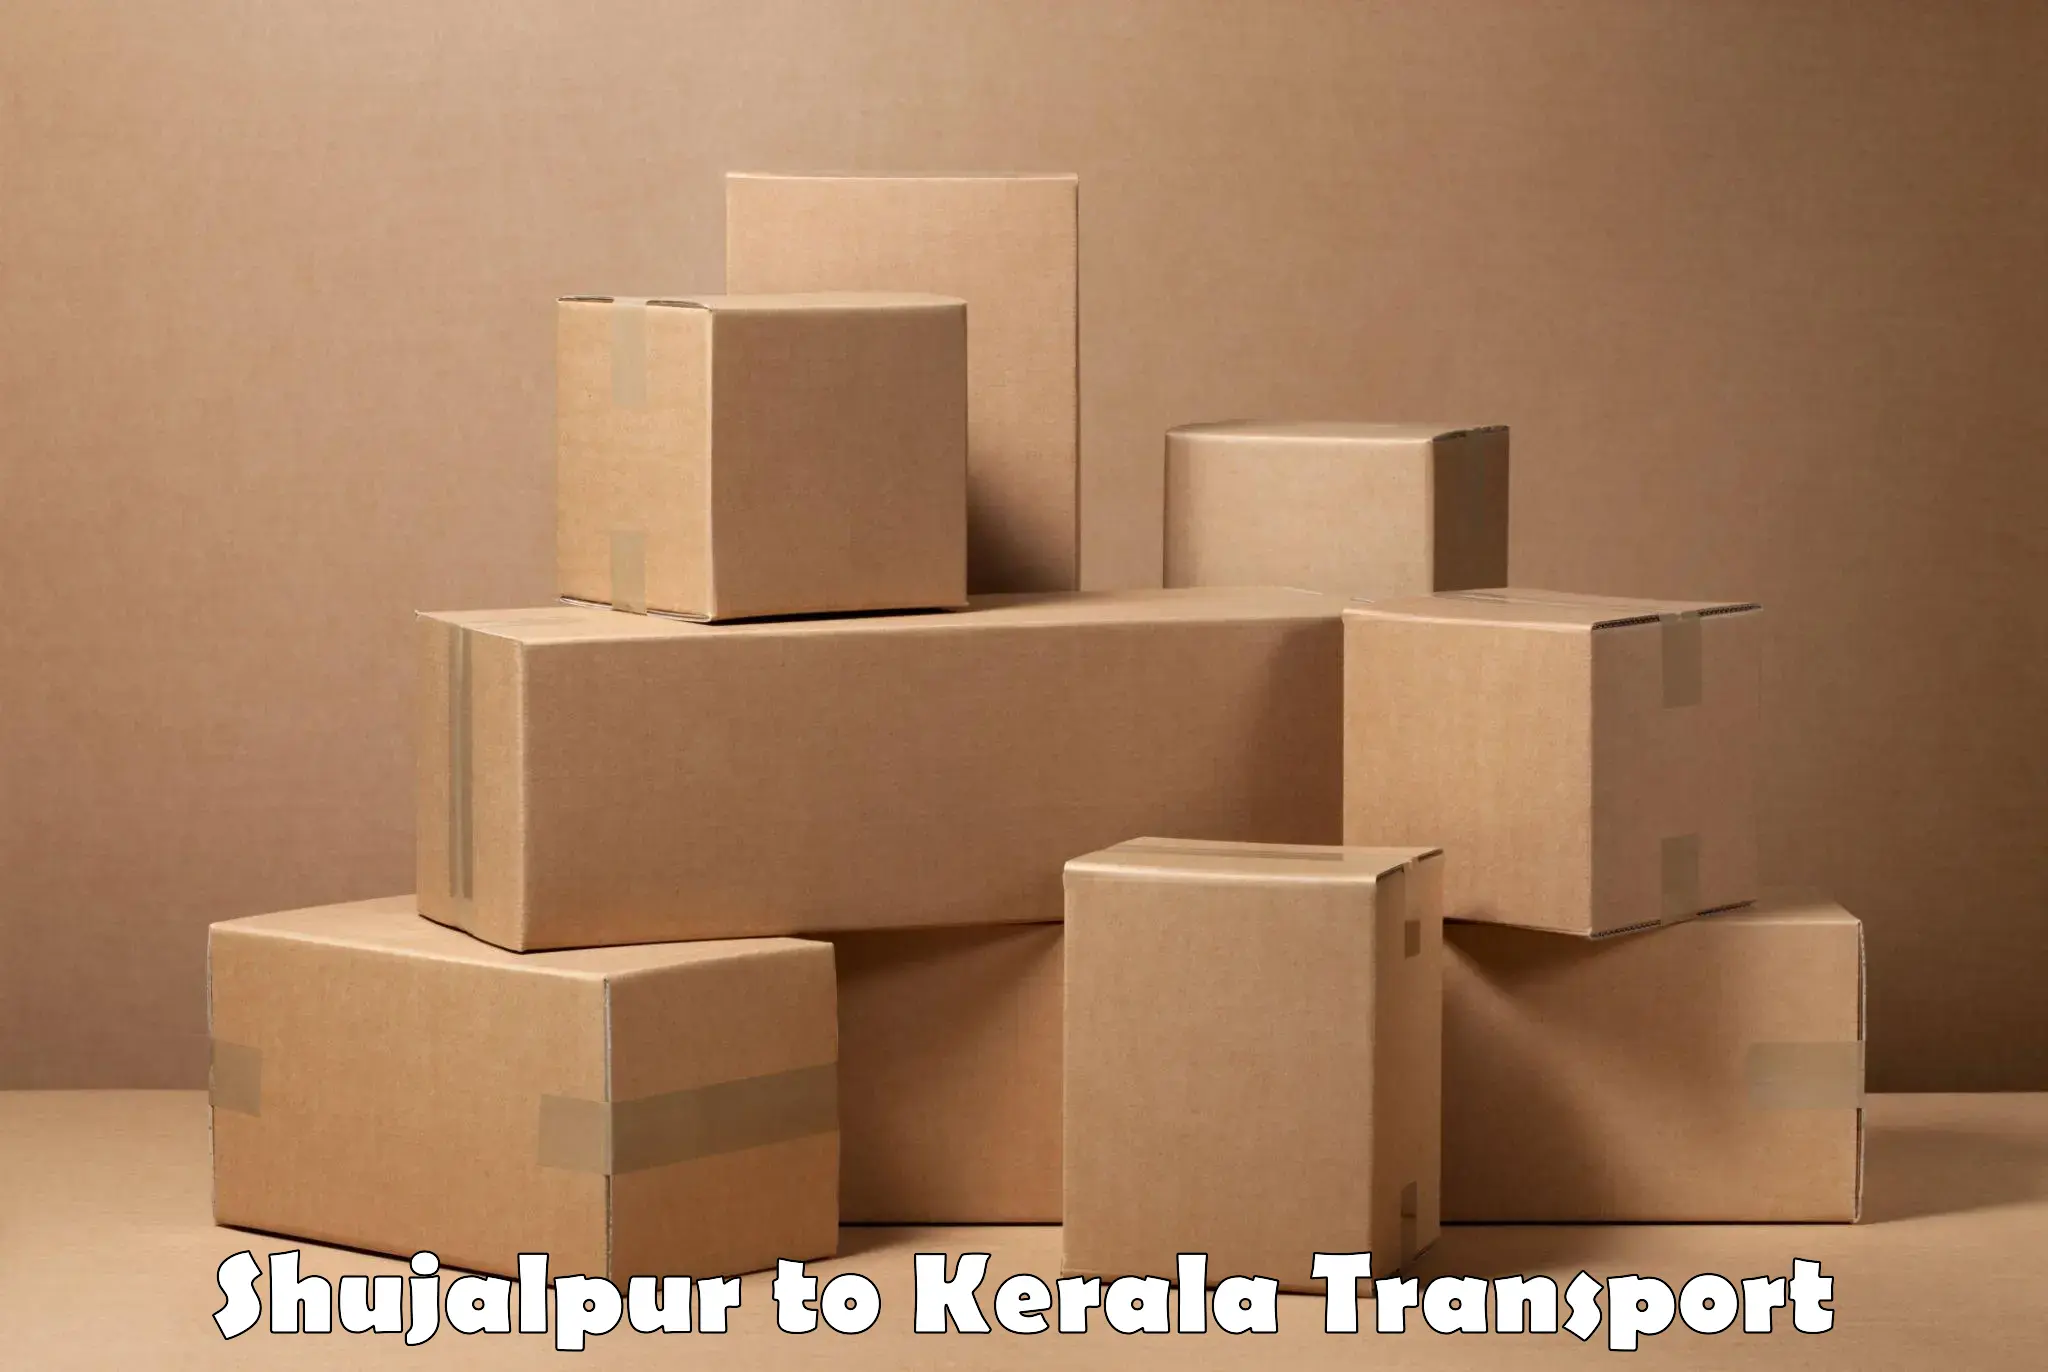 Interstate transport services Shujalpur to Trivandrum